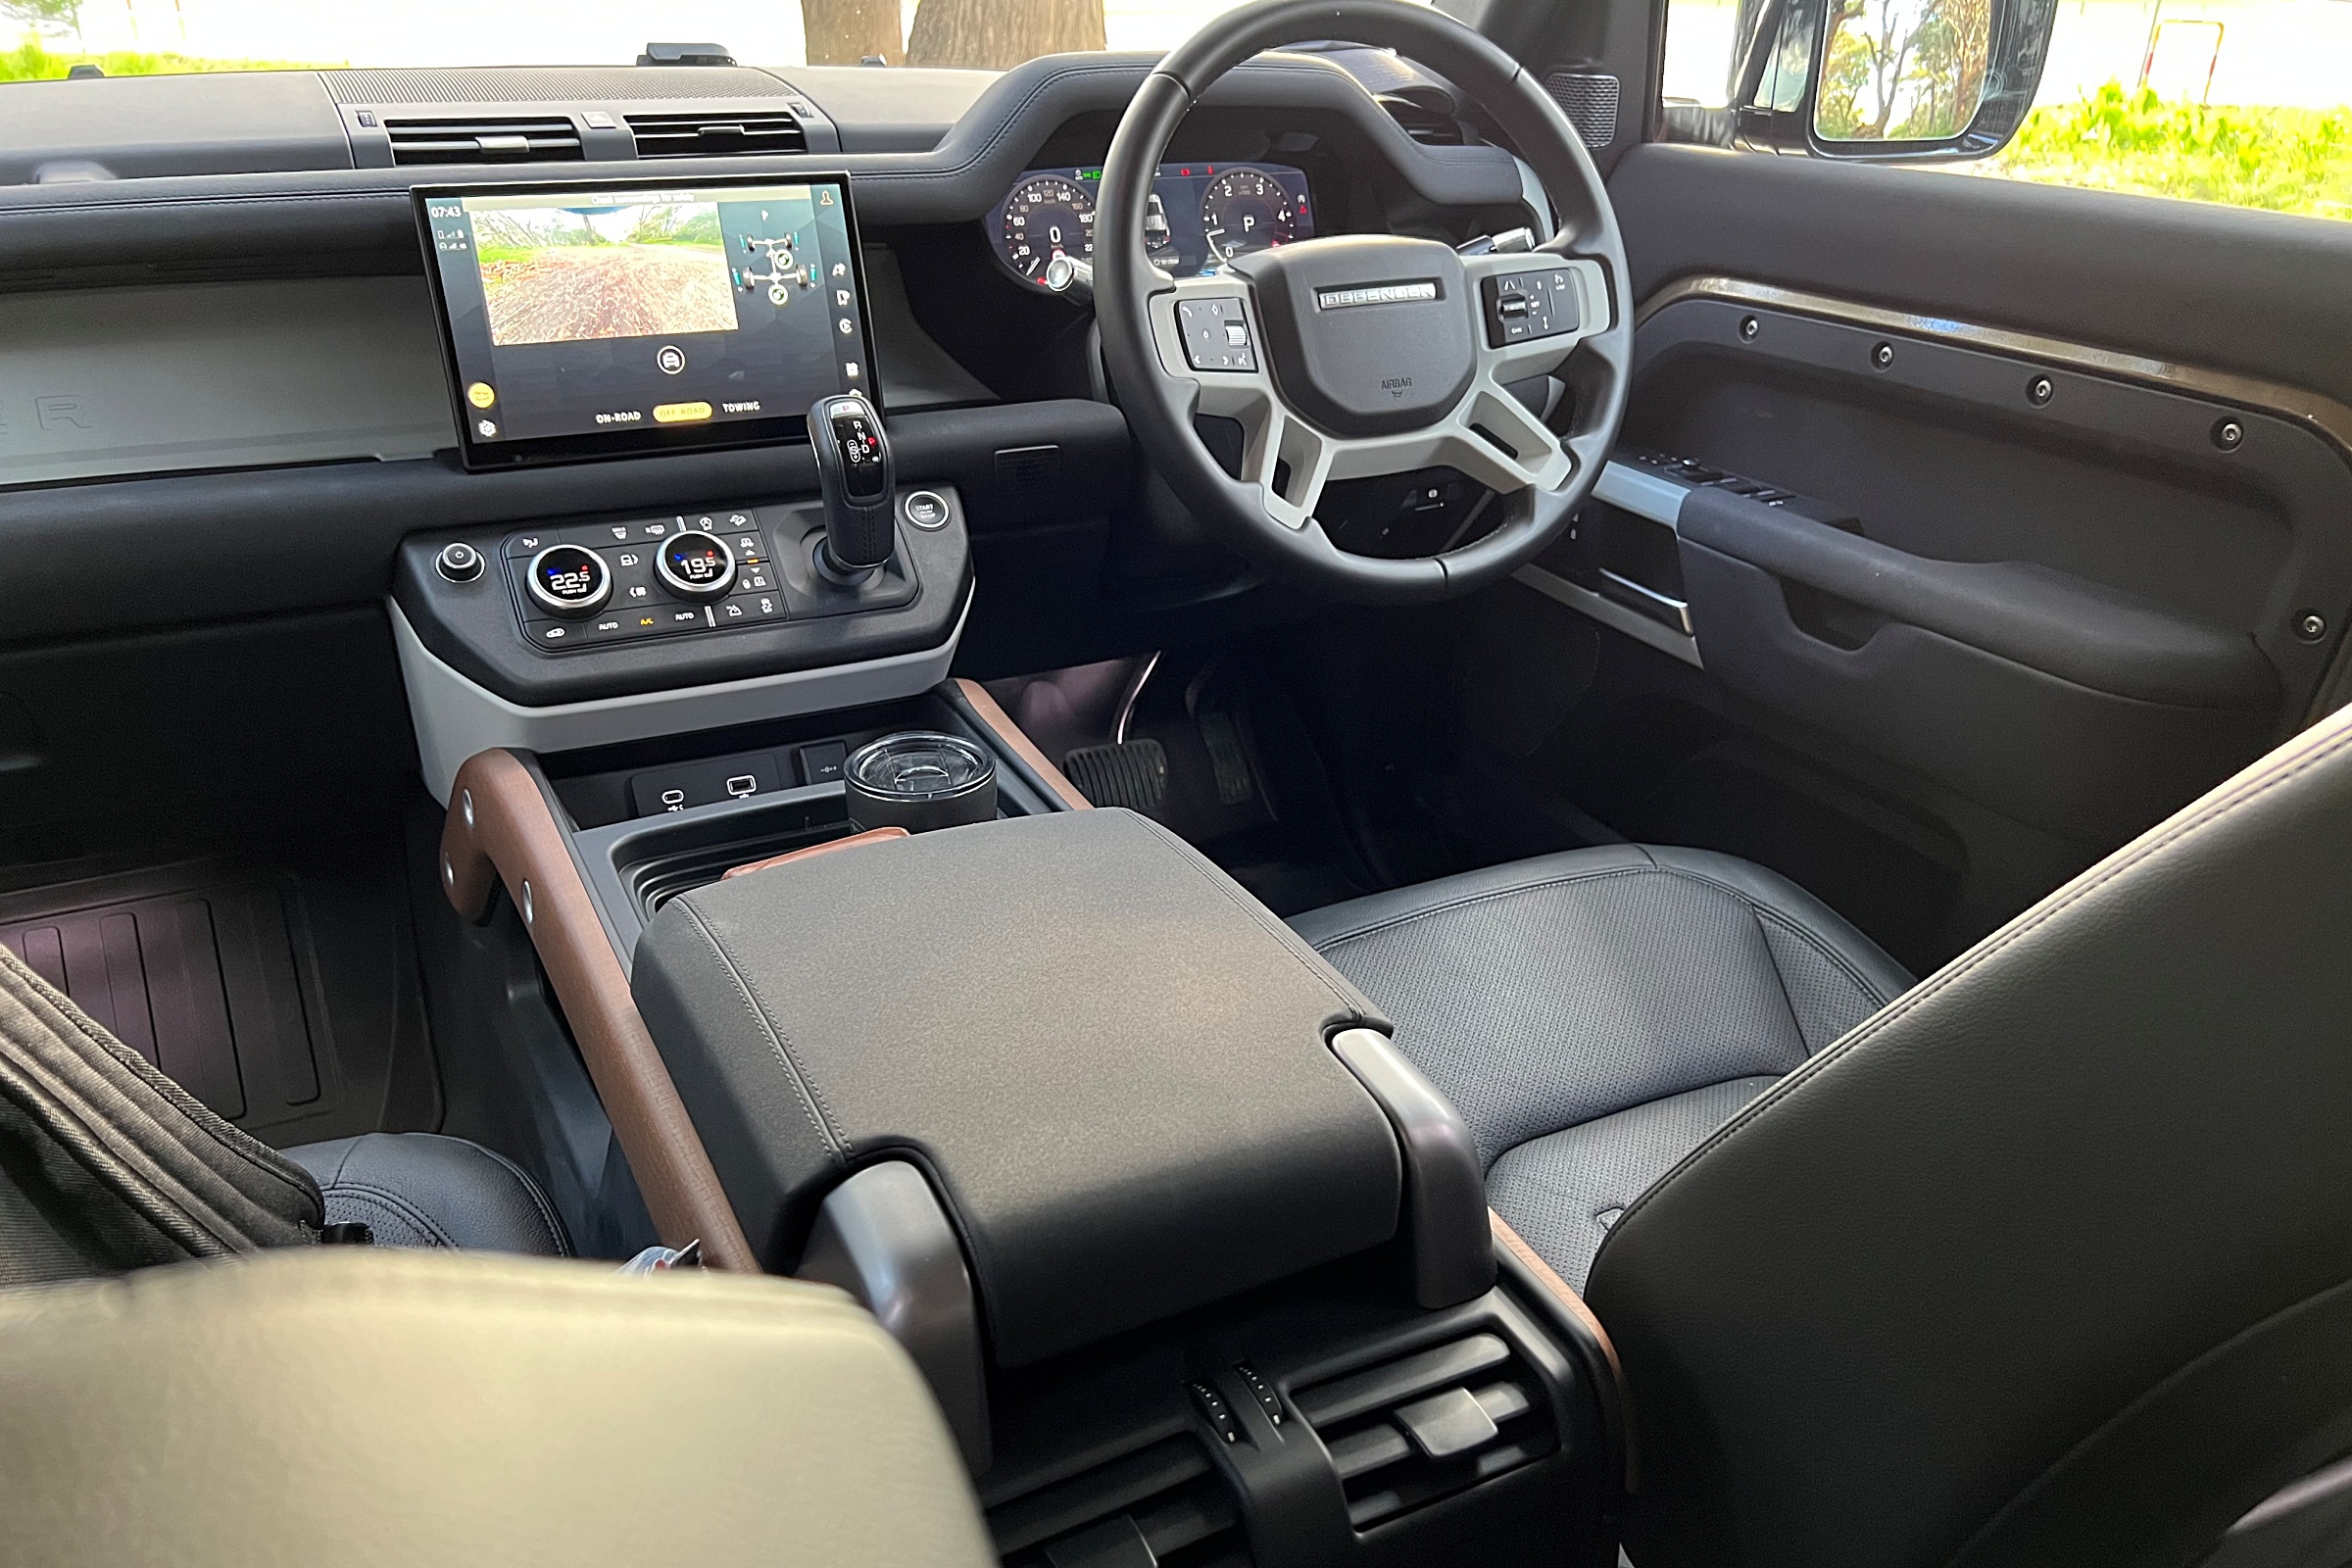 Land Rover Defender D300 SE front interior